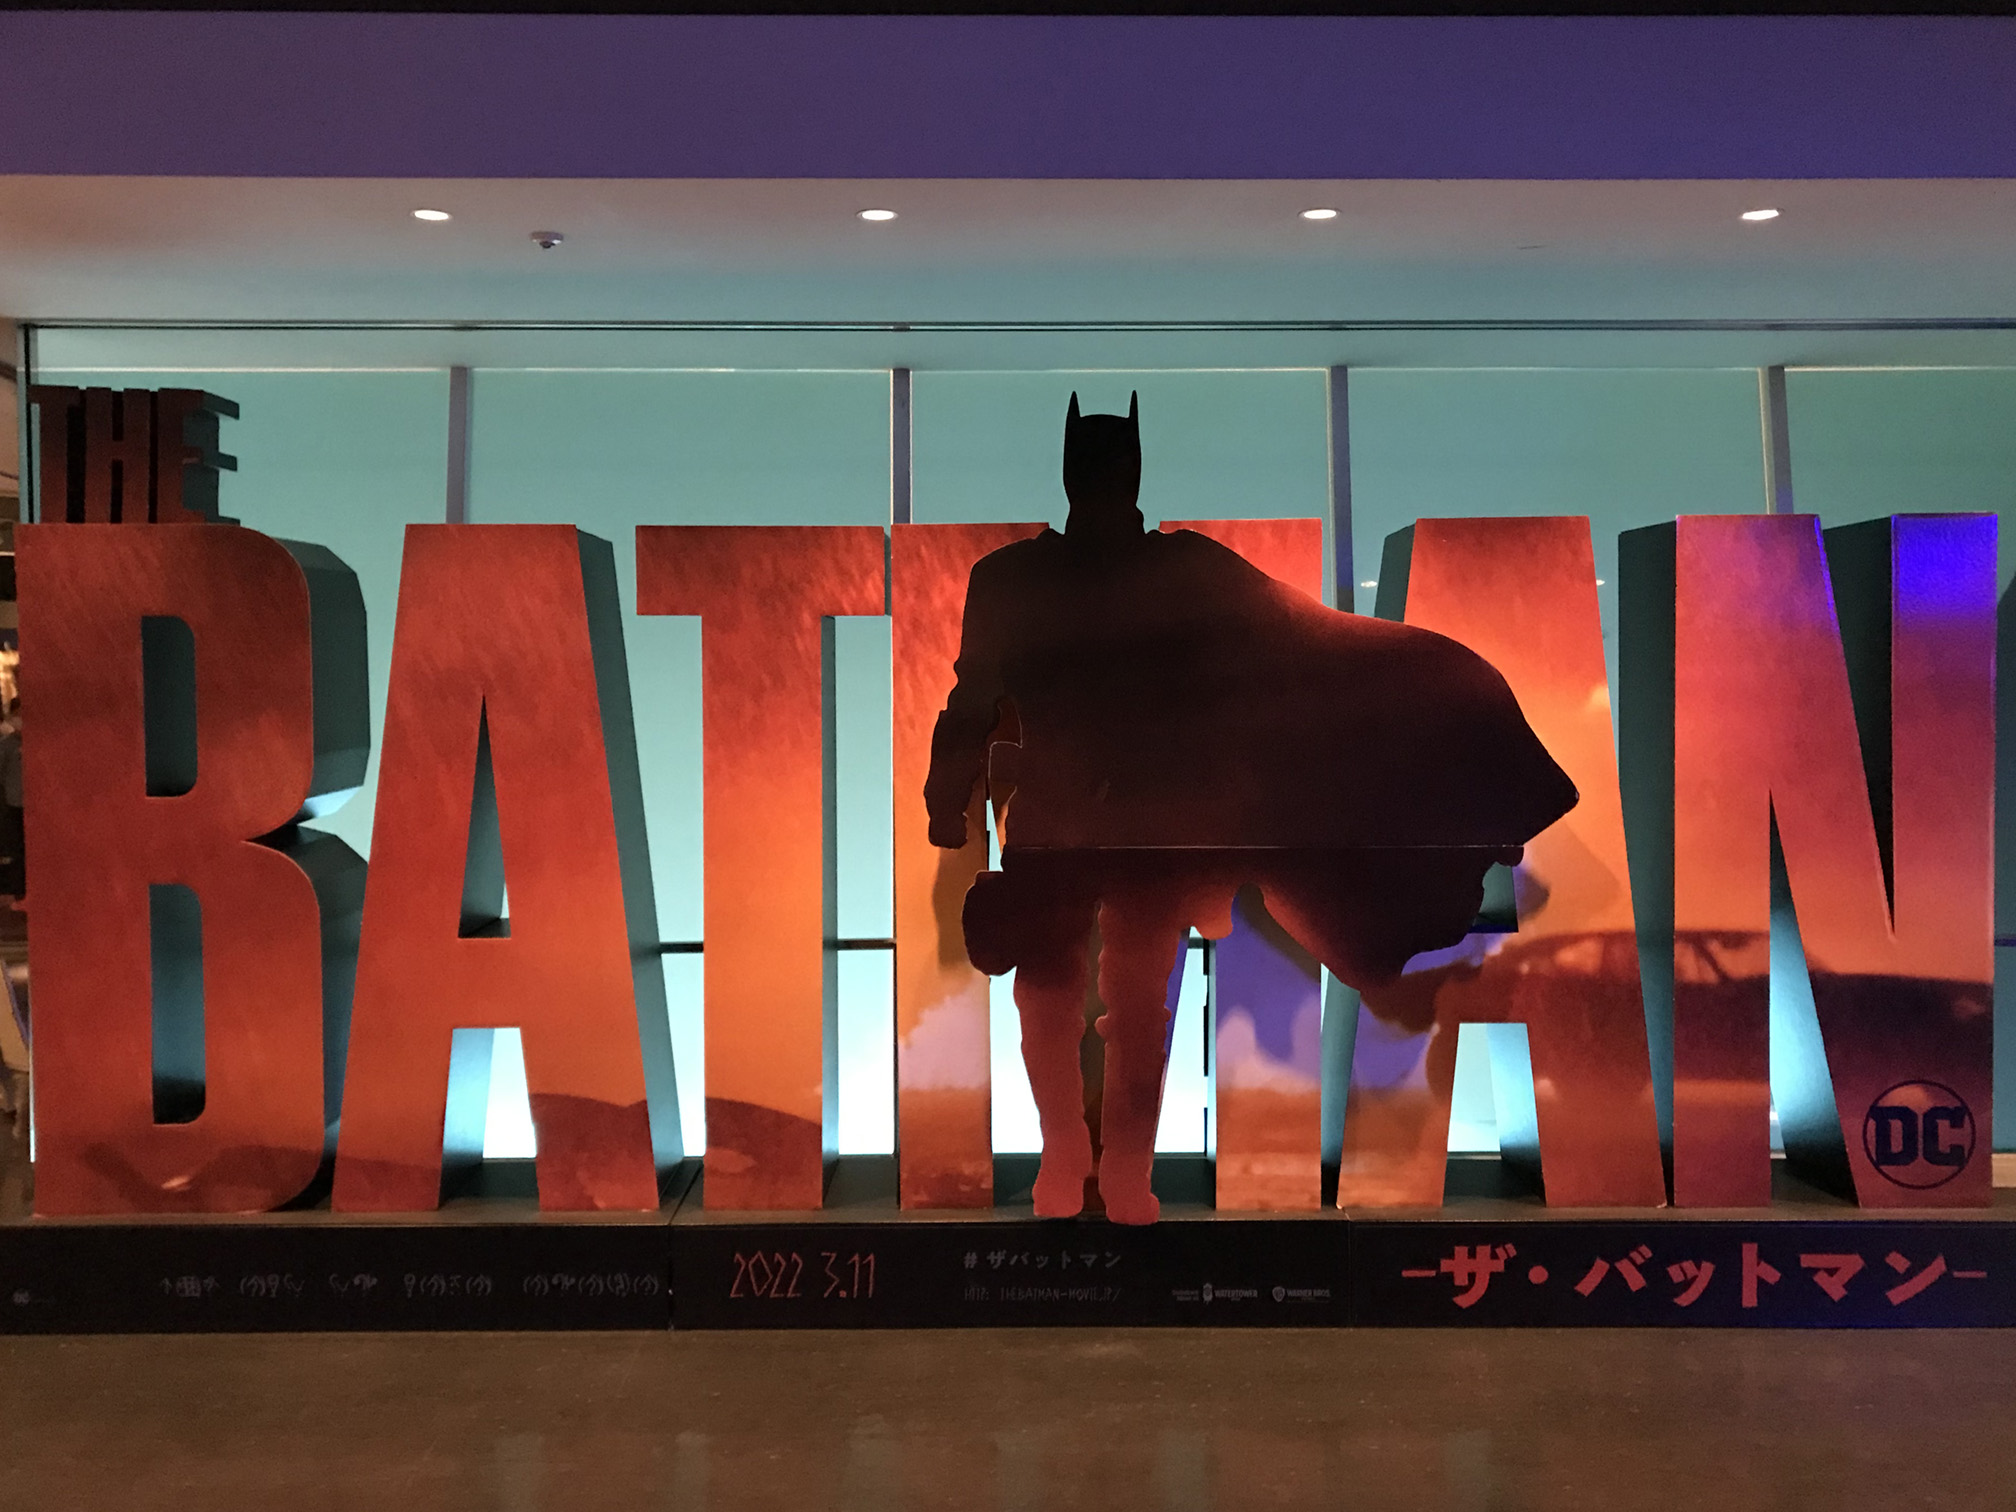 THE BATMAN -ザ・バットマン-